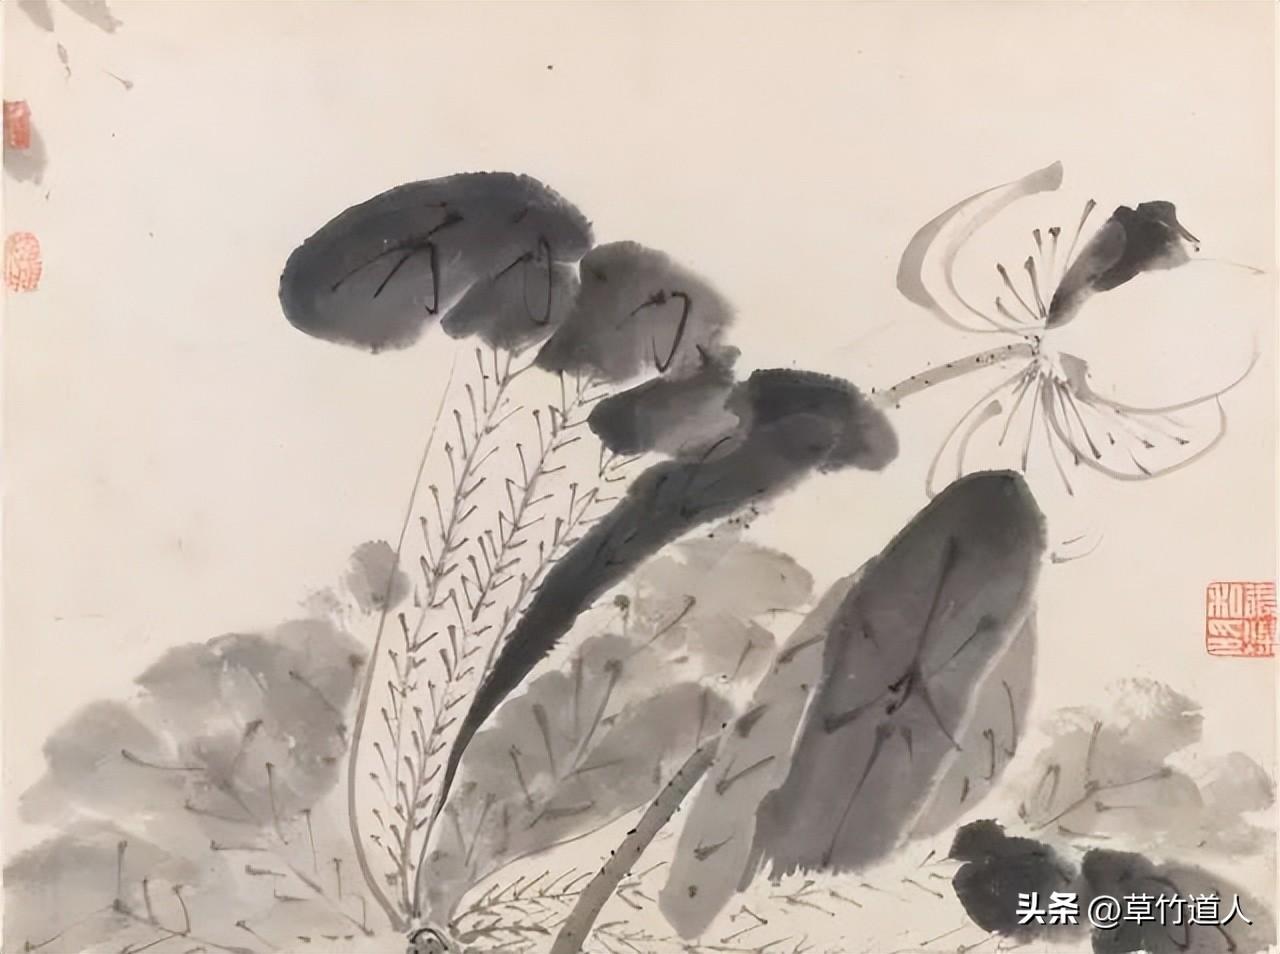 道家美学视角下中国传统绘画的意象表达与写意画发展